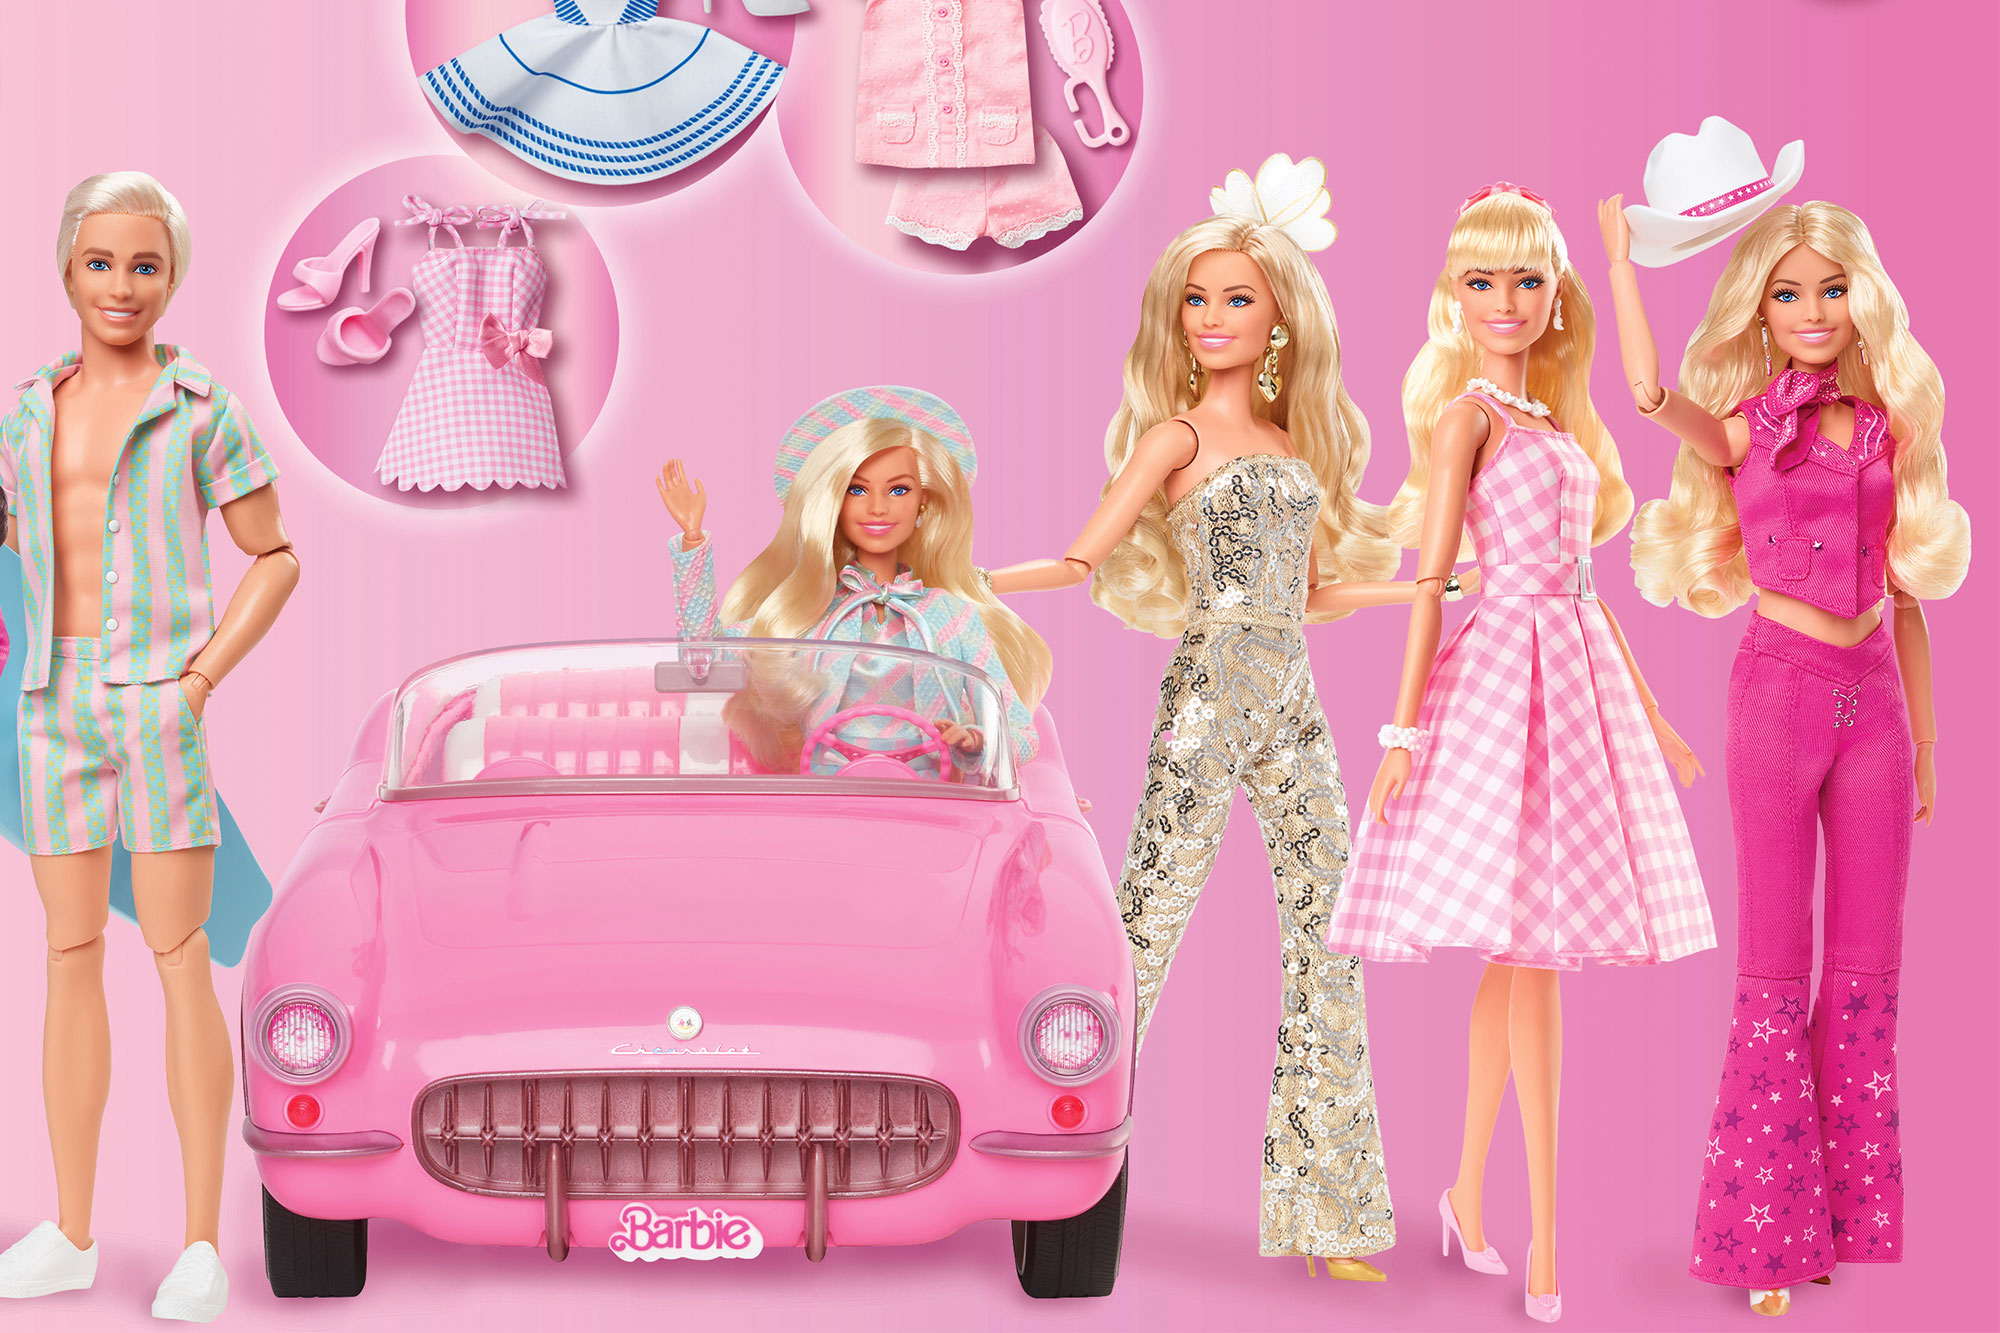 Película de Barbie, Mattel lanza nueva colección para celebrar el film